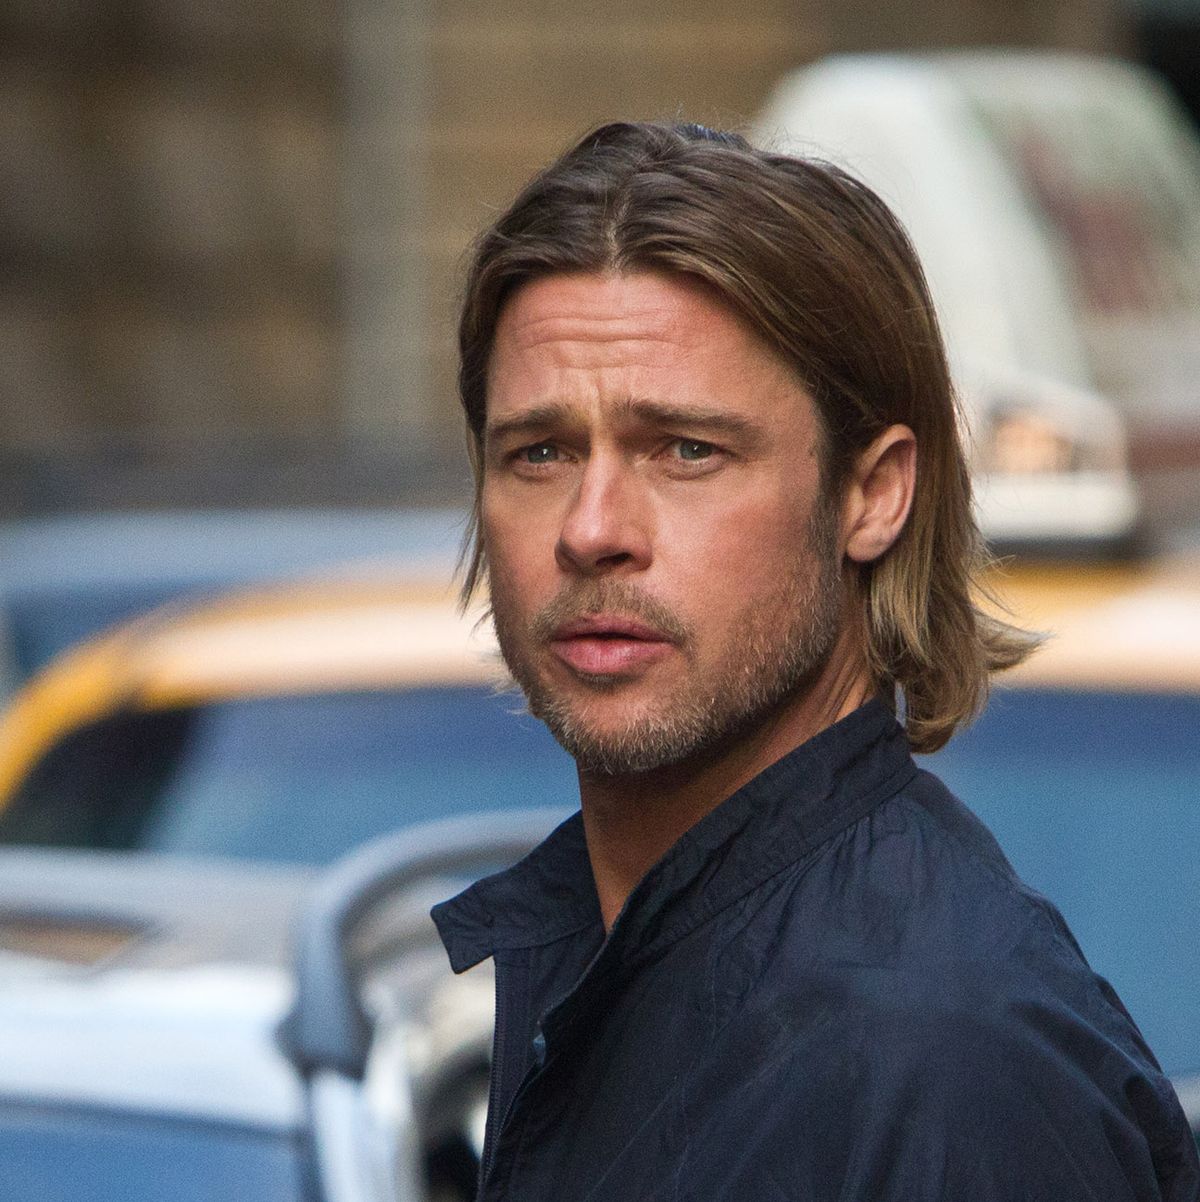 Watch: Brad Pitt Battles Zombies In World War Z 2 Fan Trailer – We Got This  Covered